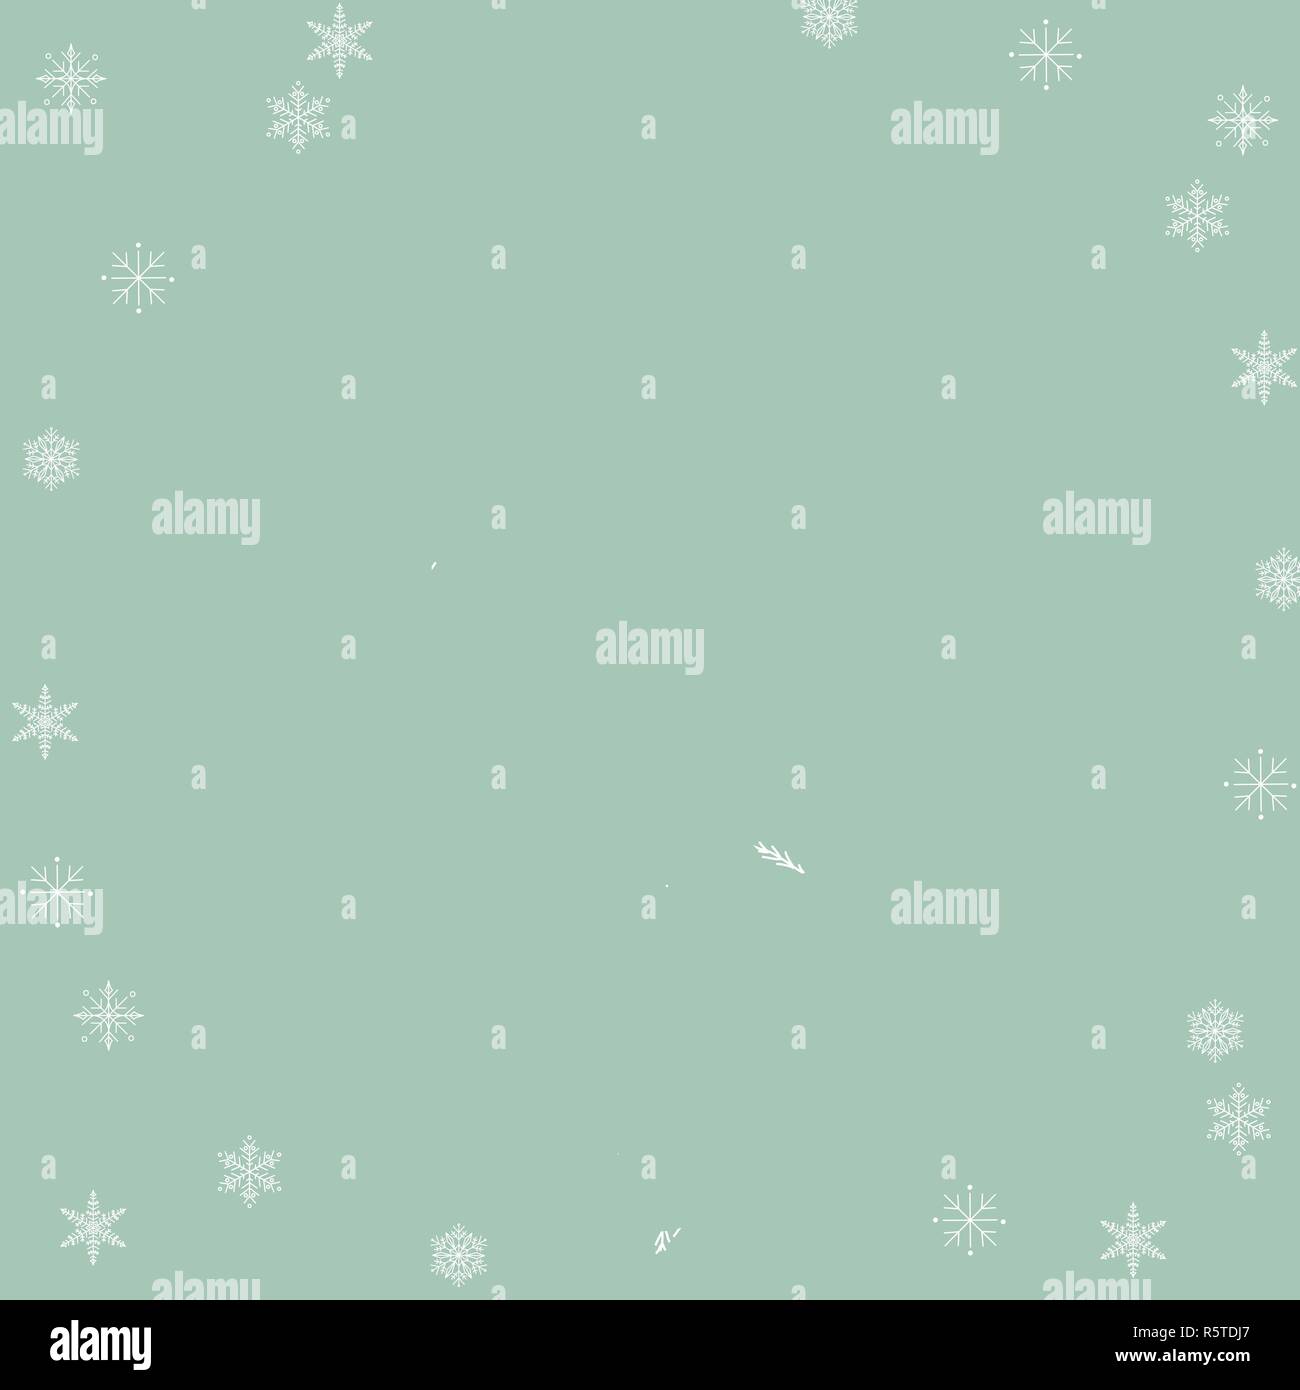 Hintergrund Design für Weihnachten in einfache flache flache Hand gezeichnete Grafik. Weiße silhouette Kranz und Schneeflocken sind auf Pastell-blaue Hintergrund mit spac Stock Vektor